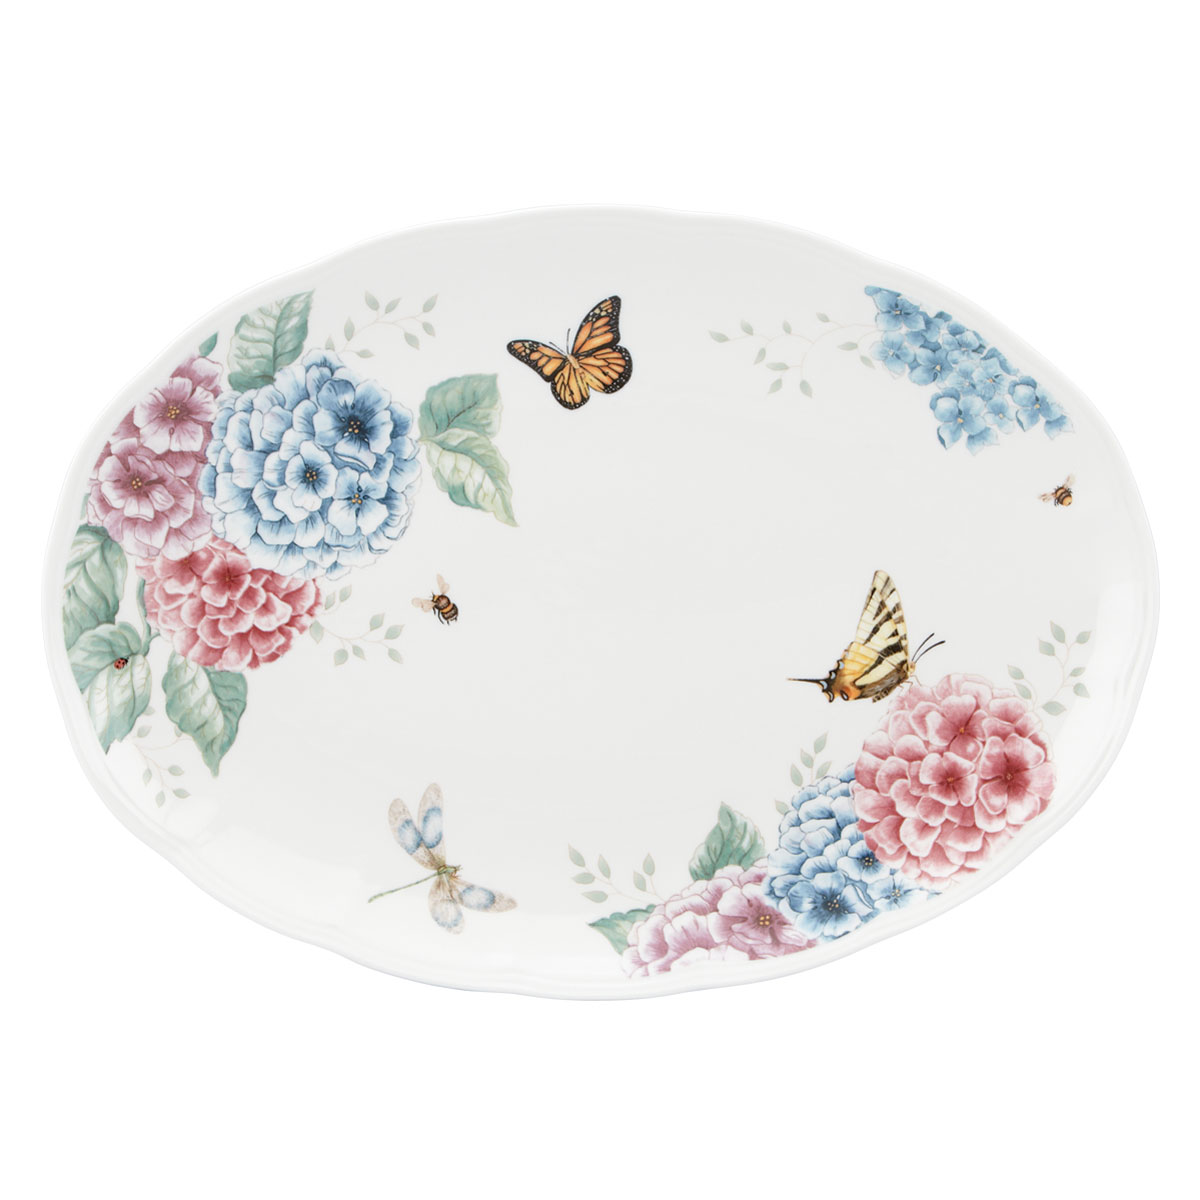 Lenox Butterfly Meadow Hydrangea China Oval Platter